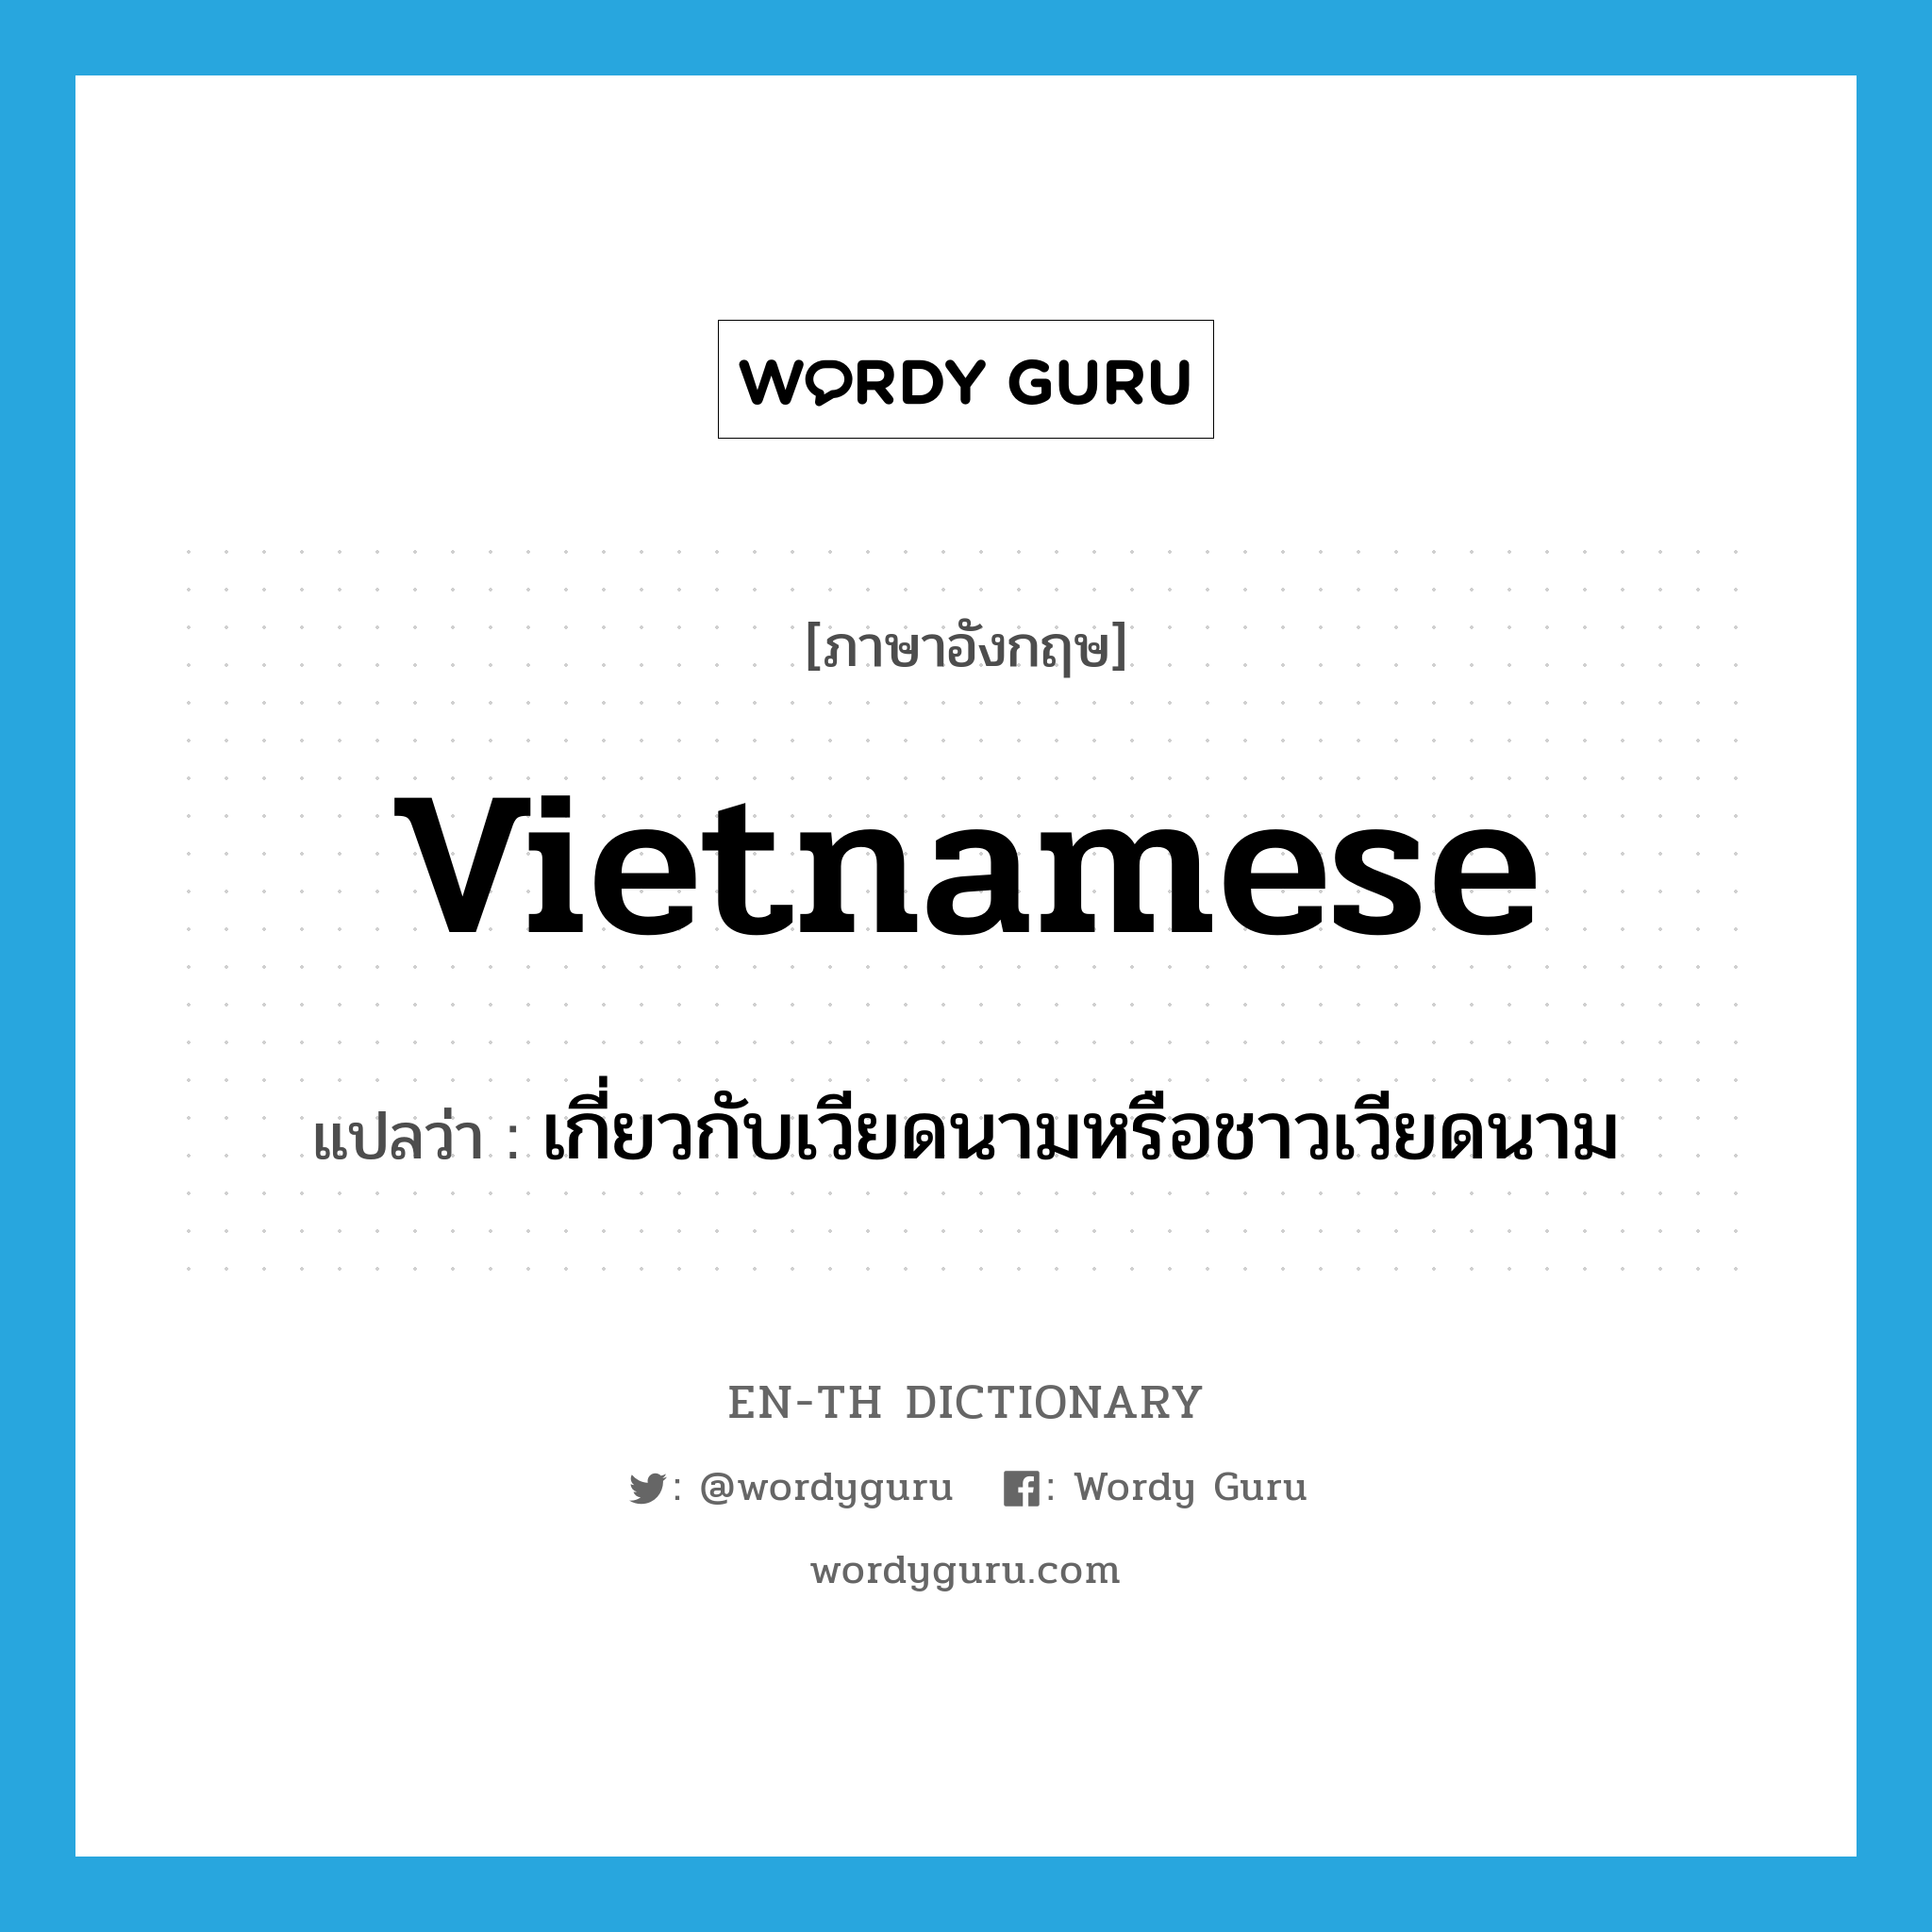 เกี่ยวกับเวียดนามหรือชาวเวียดนาม ภาษาอังกฤษ?, คำศัพท์ภาษาอังกฤษ เกี่ยวกับเวียดนามหรือชาวเวียดนาม แปลว่า Vietnamese ประเภท ADJ หมวด ADJ